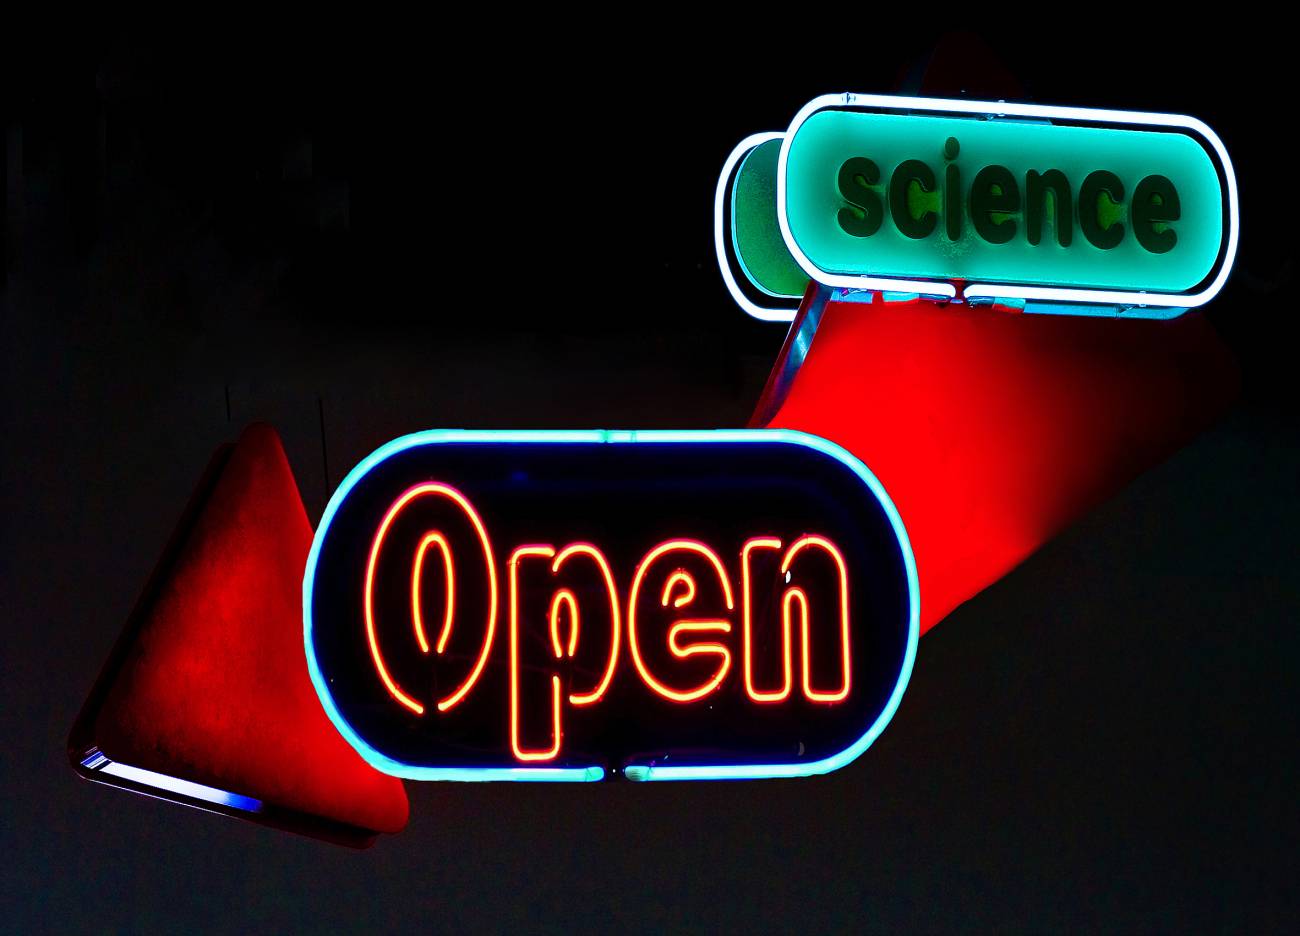 La publicación en acceso abierto es mucho mejor para el científico, ya que no renuncia a su derecho con varias editoriales y conserva la capacidad de gestionar su propiedad intelectual. / Indered by Talent